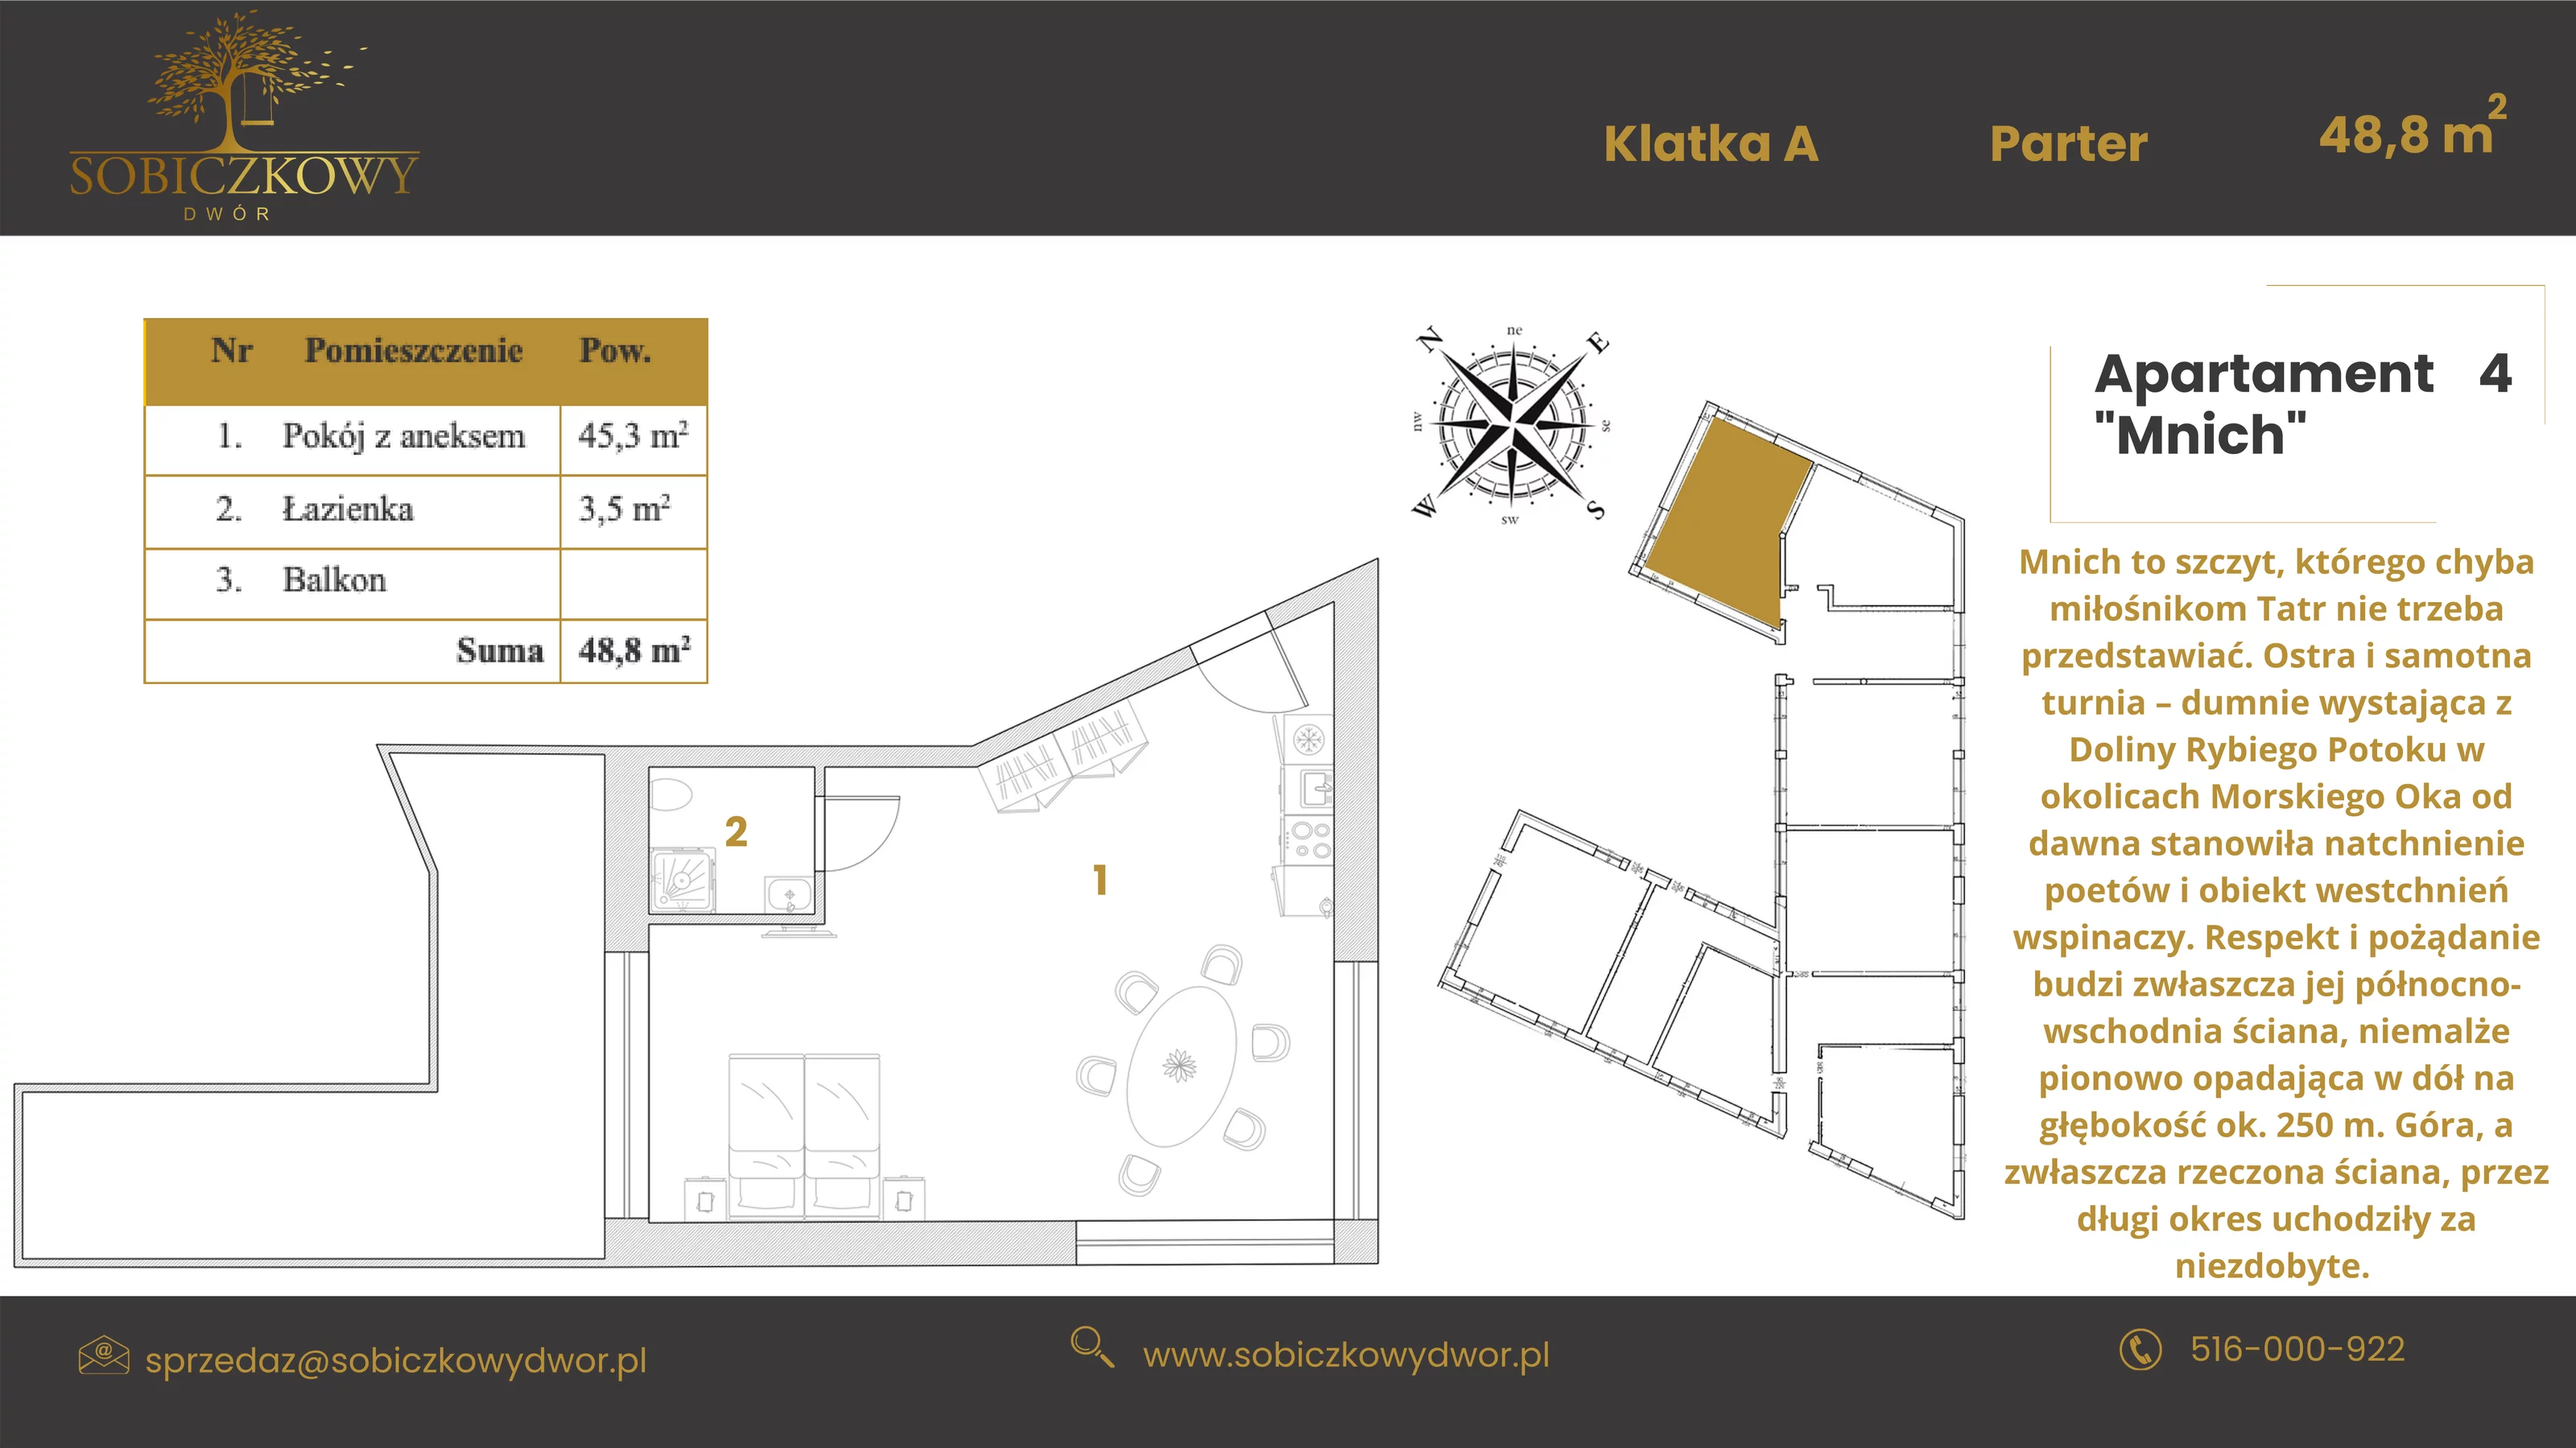 Apartament 48,80 m², parter, oferta nr 4 "Mnich", Sobiczkowy Dwór, Kościelisko, ul. Sobiczkowa Bór 1